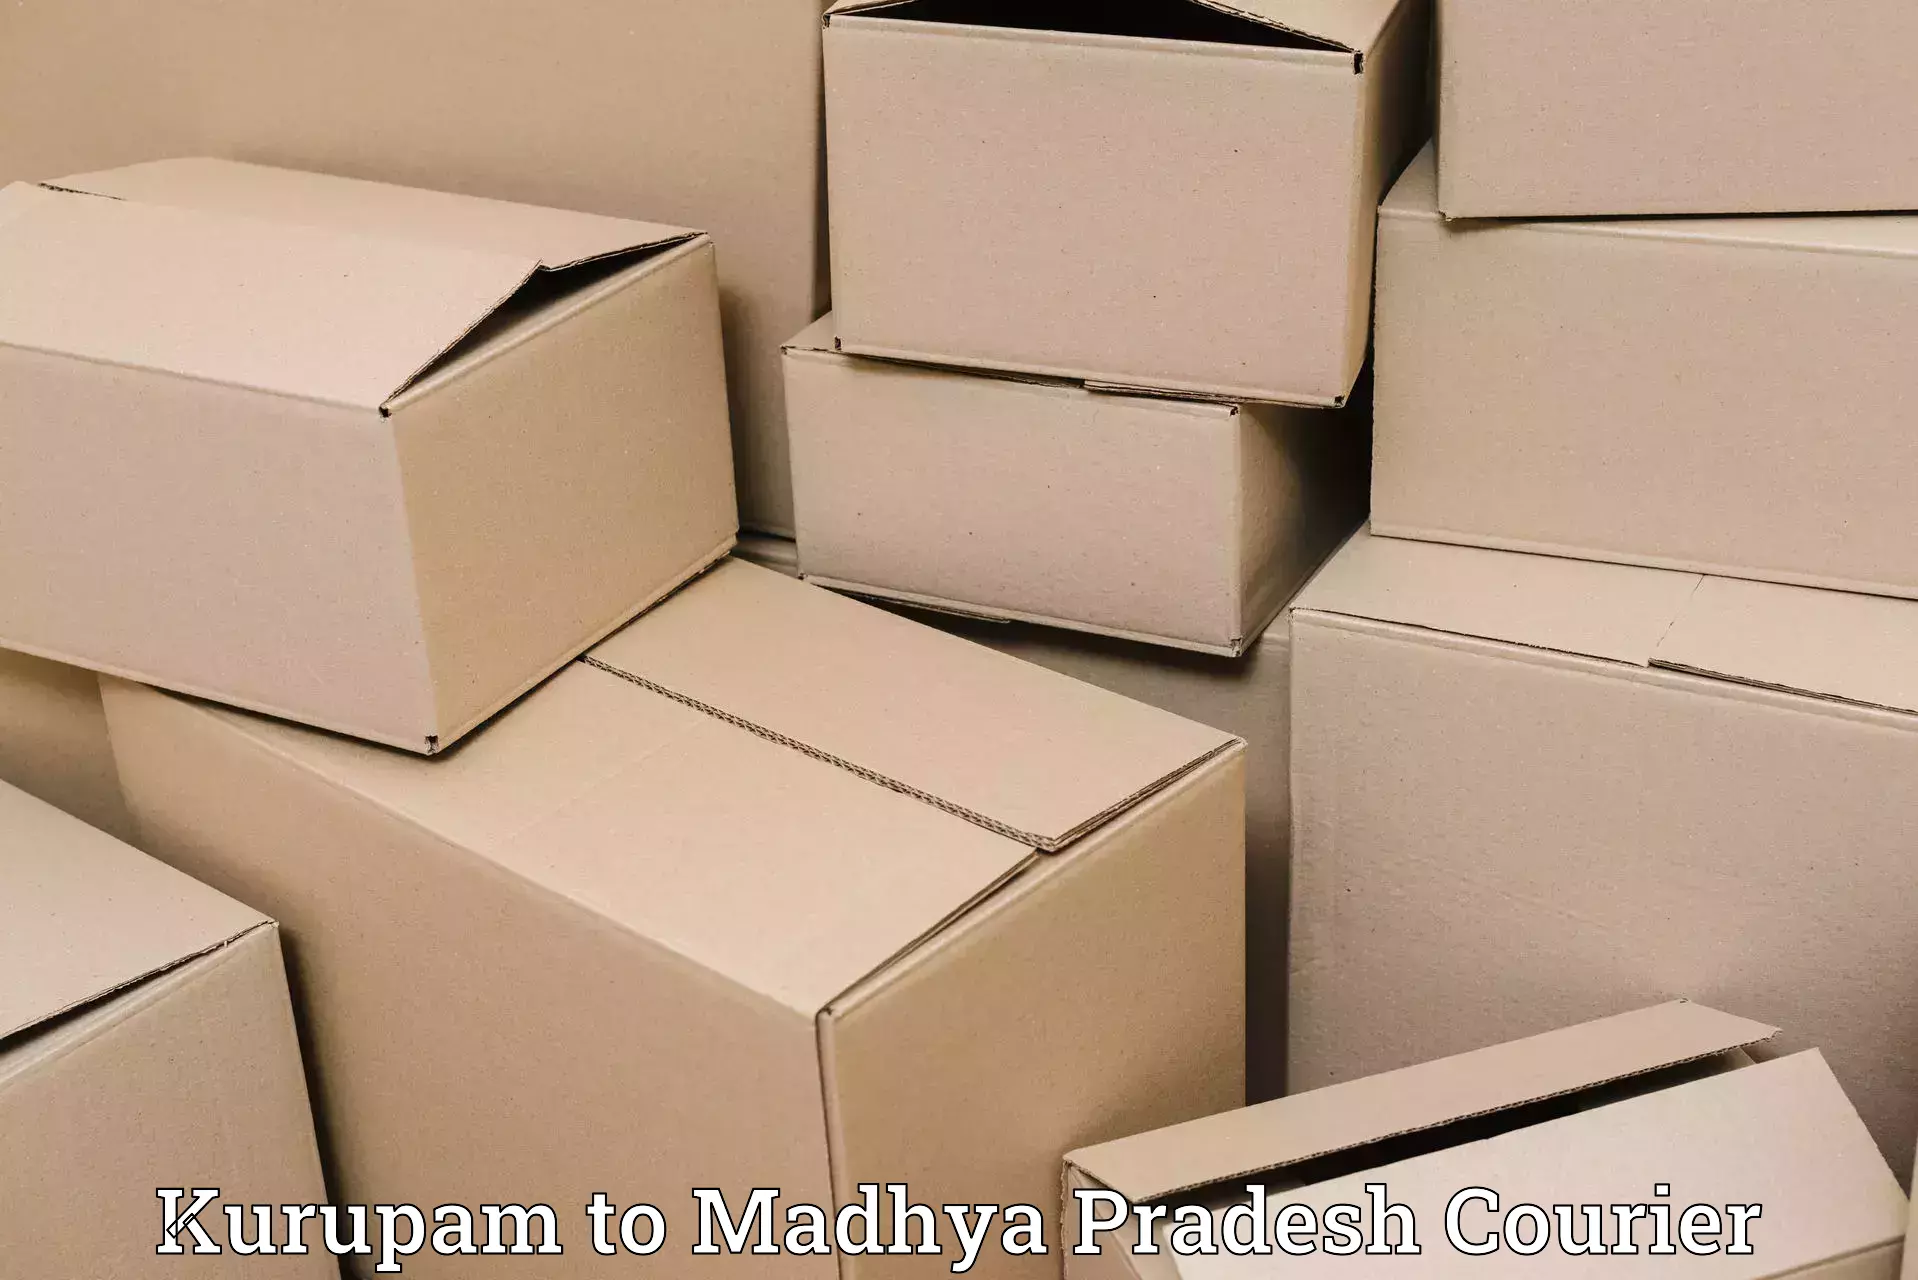 Cost-effective courier options Kurupam to Begumganj